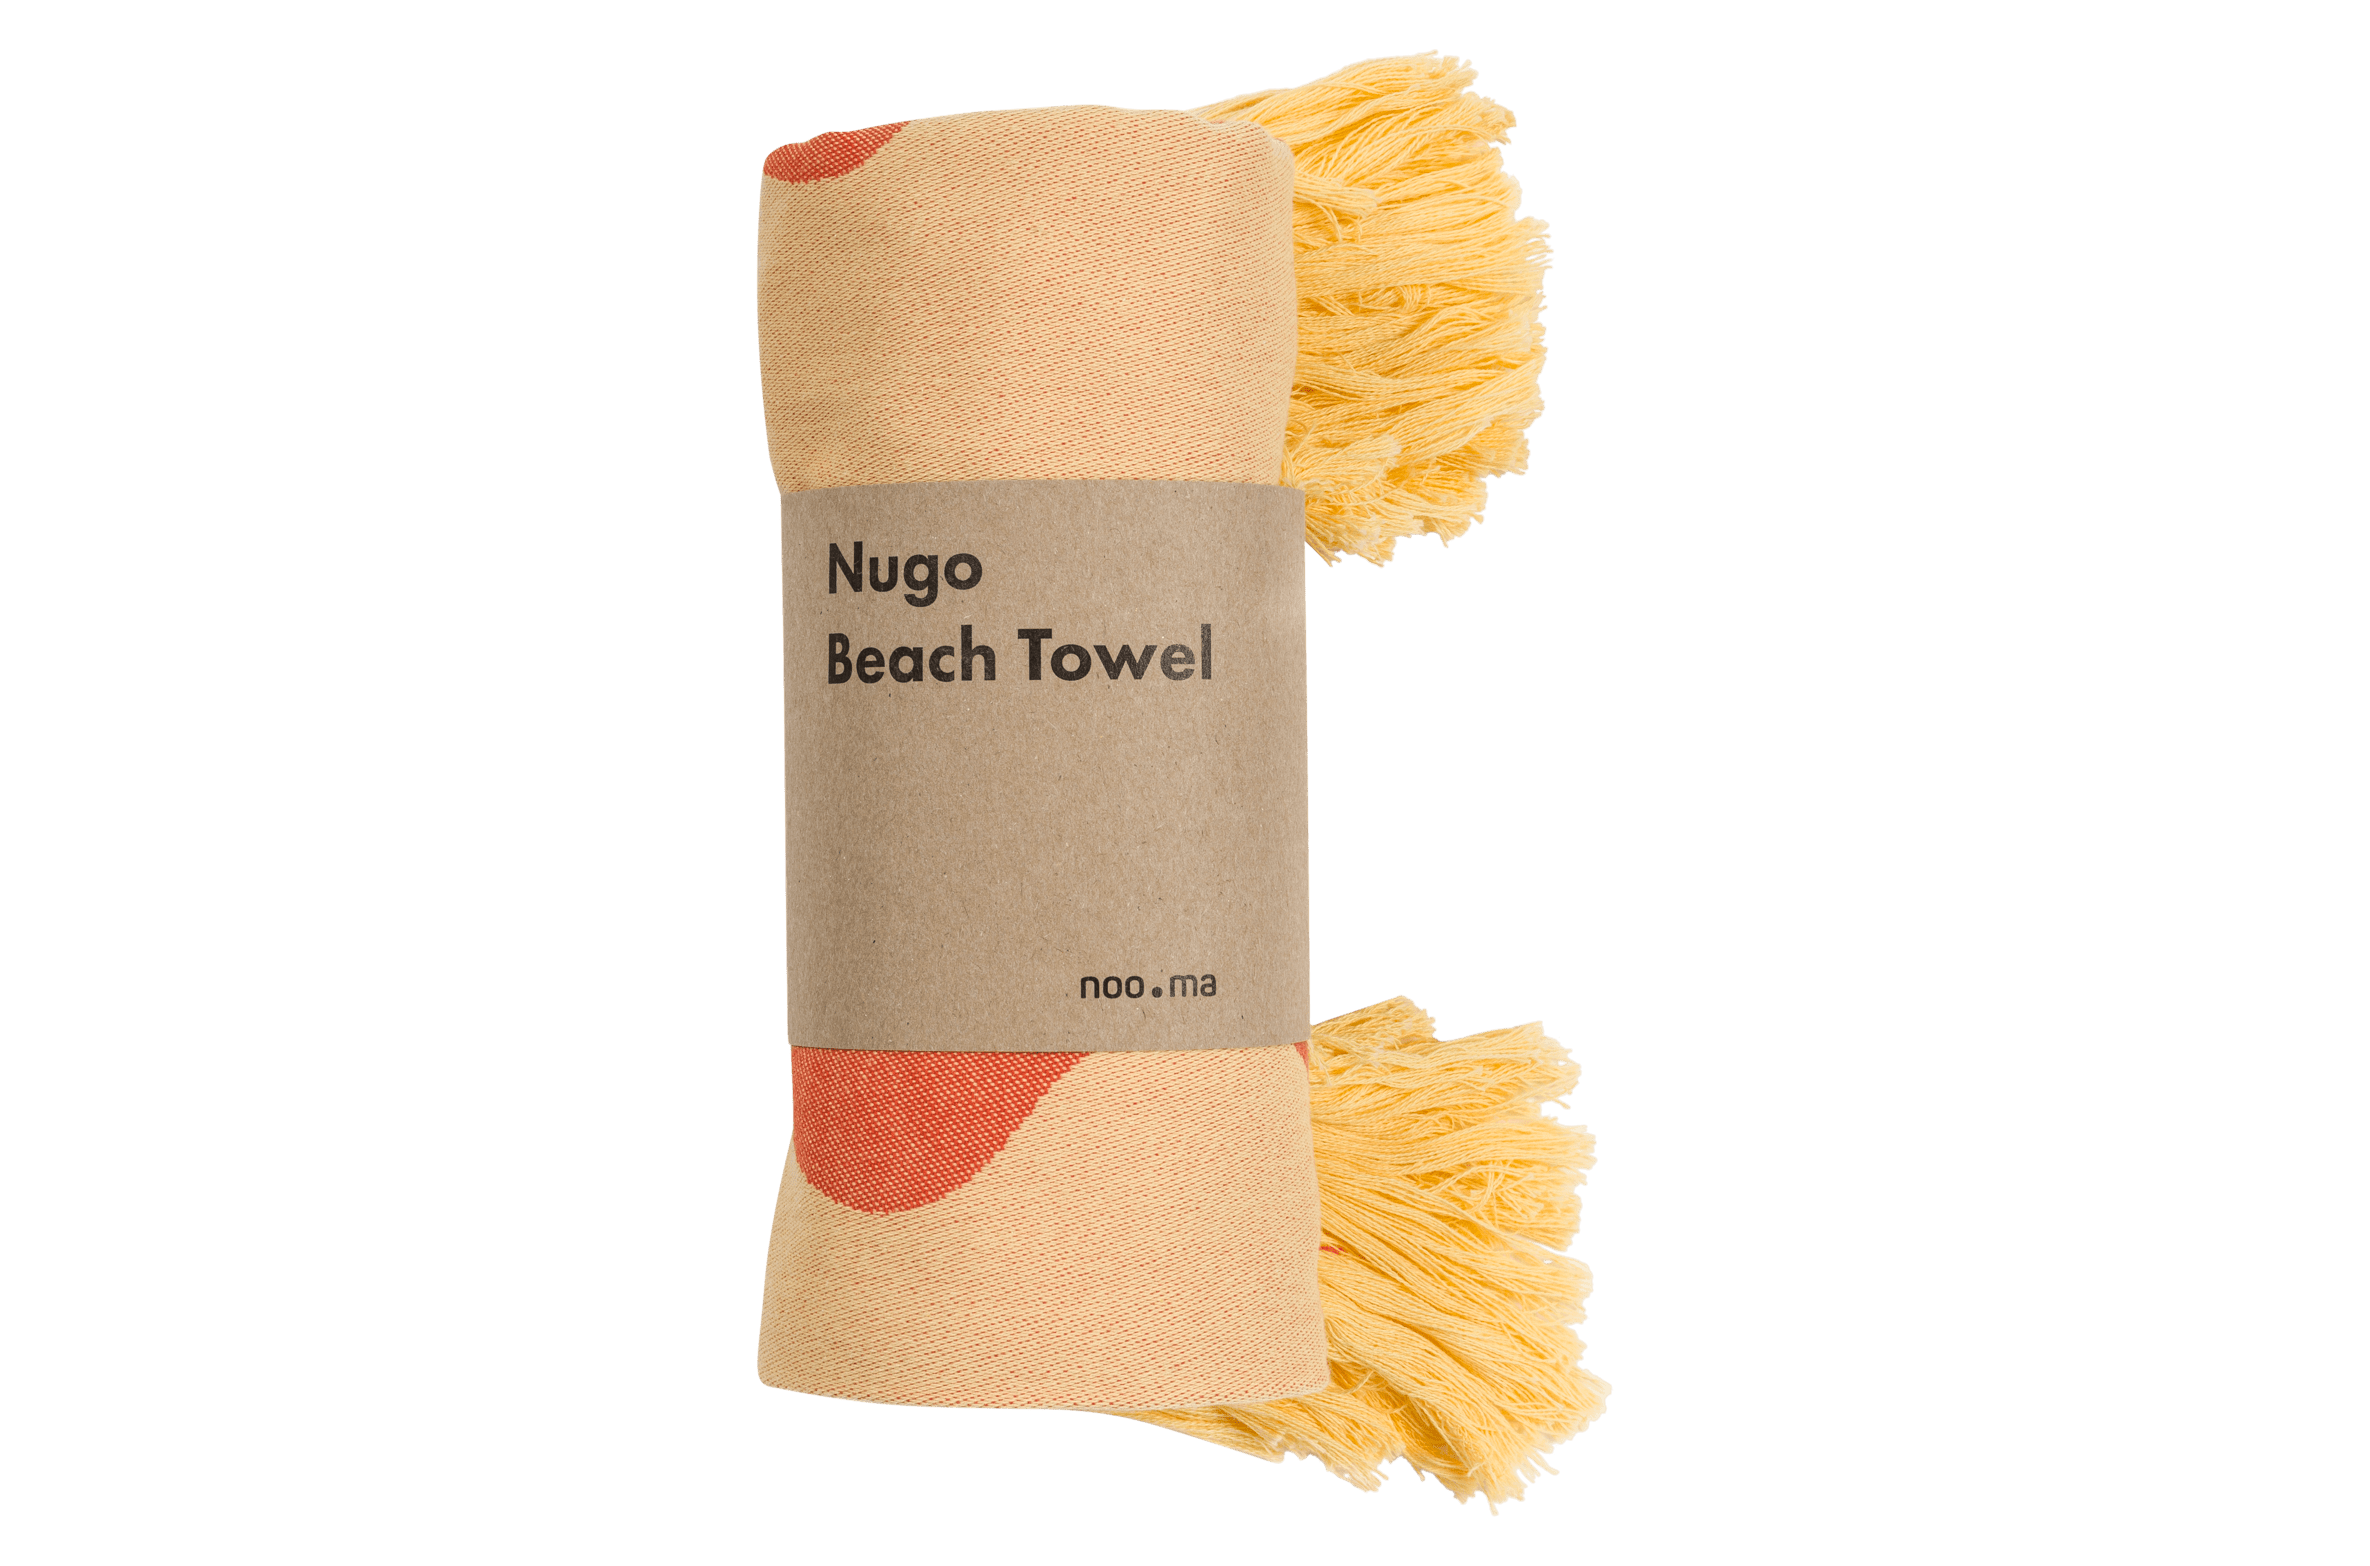 Nugo Beach Towel